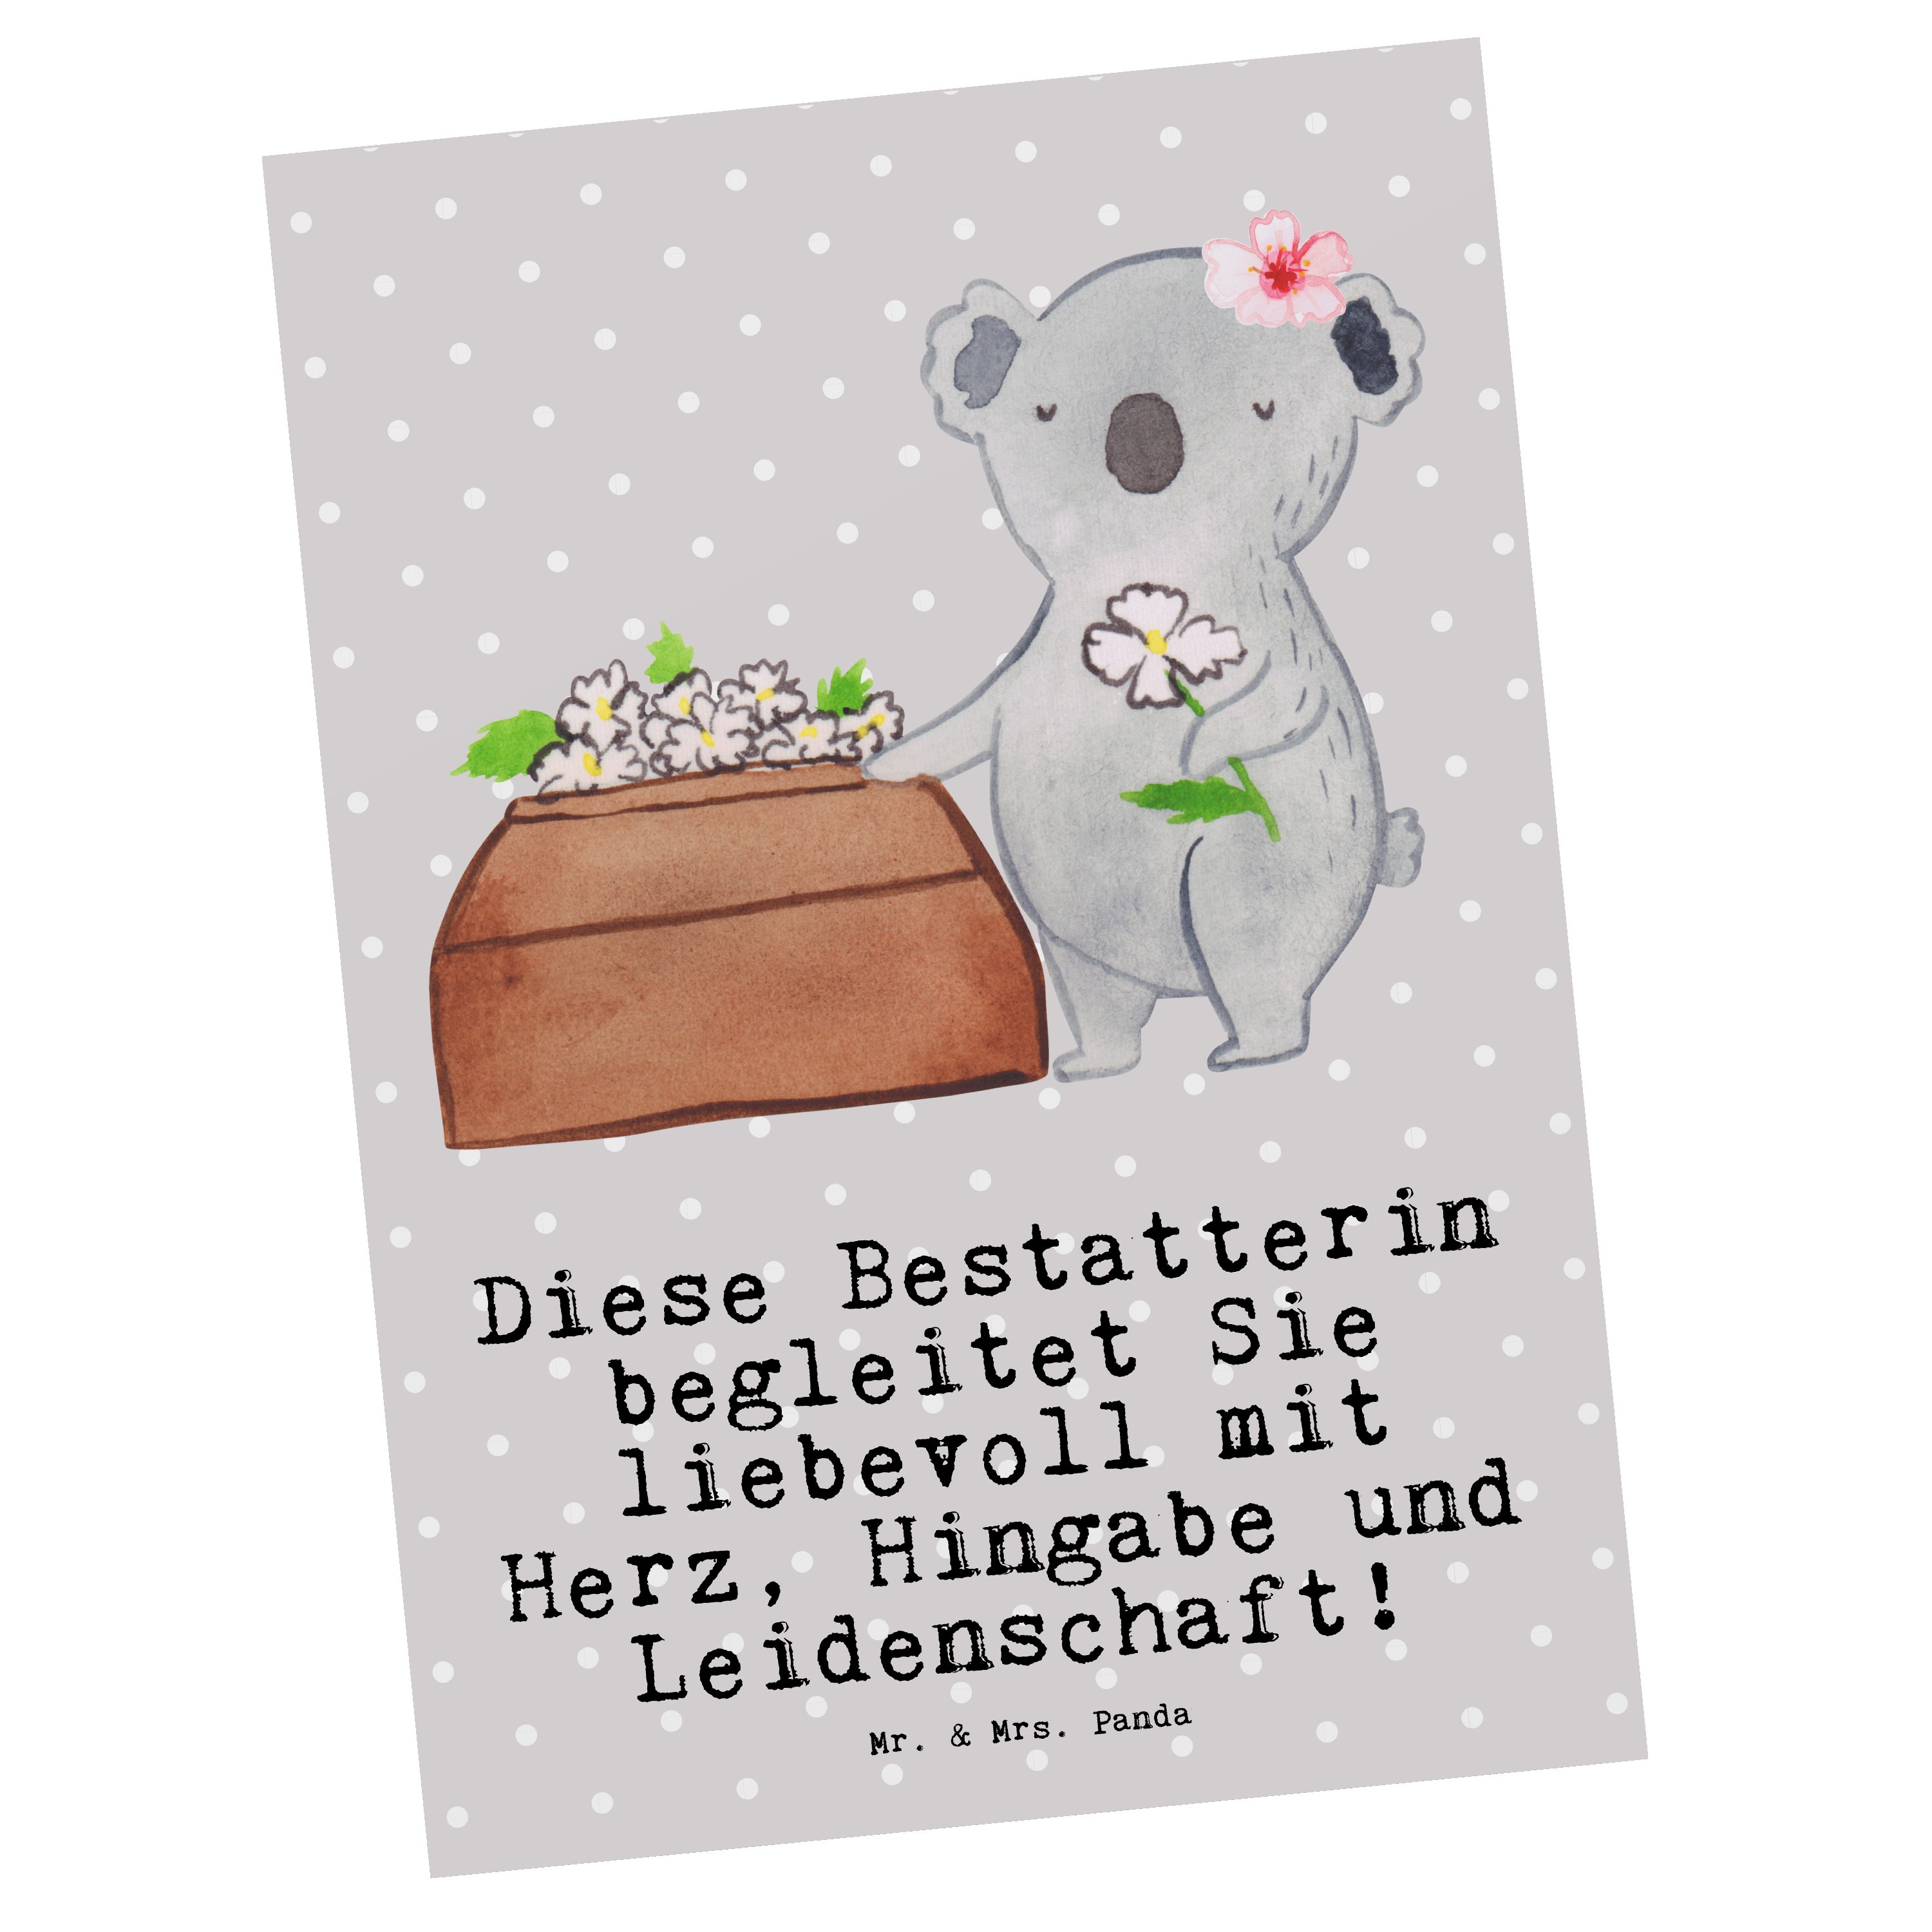 Mr. & Mrs. Panda Postkarte Bestatterin mit Herz - Grau Pastell - Geschenk, Einladung, Beruf, Ges